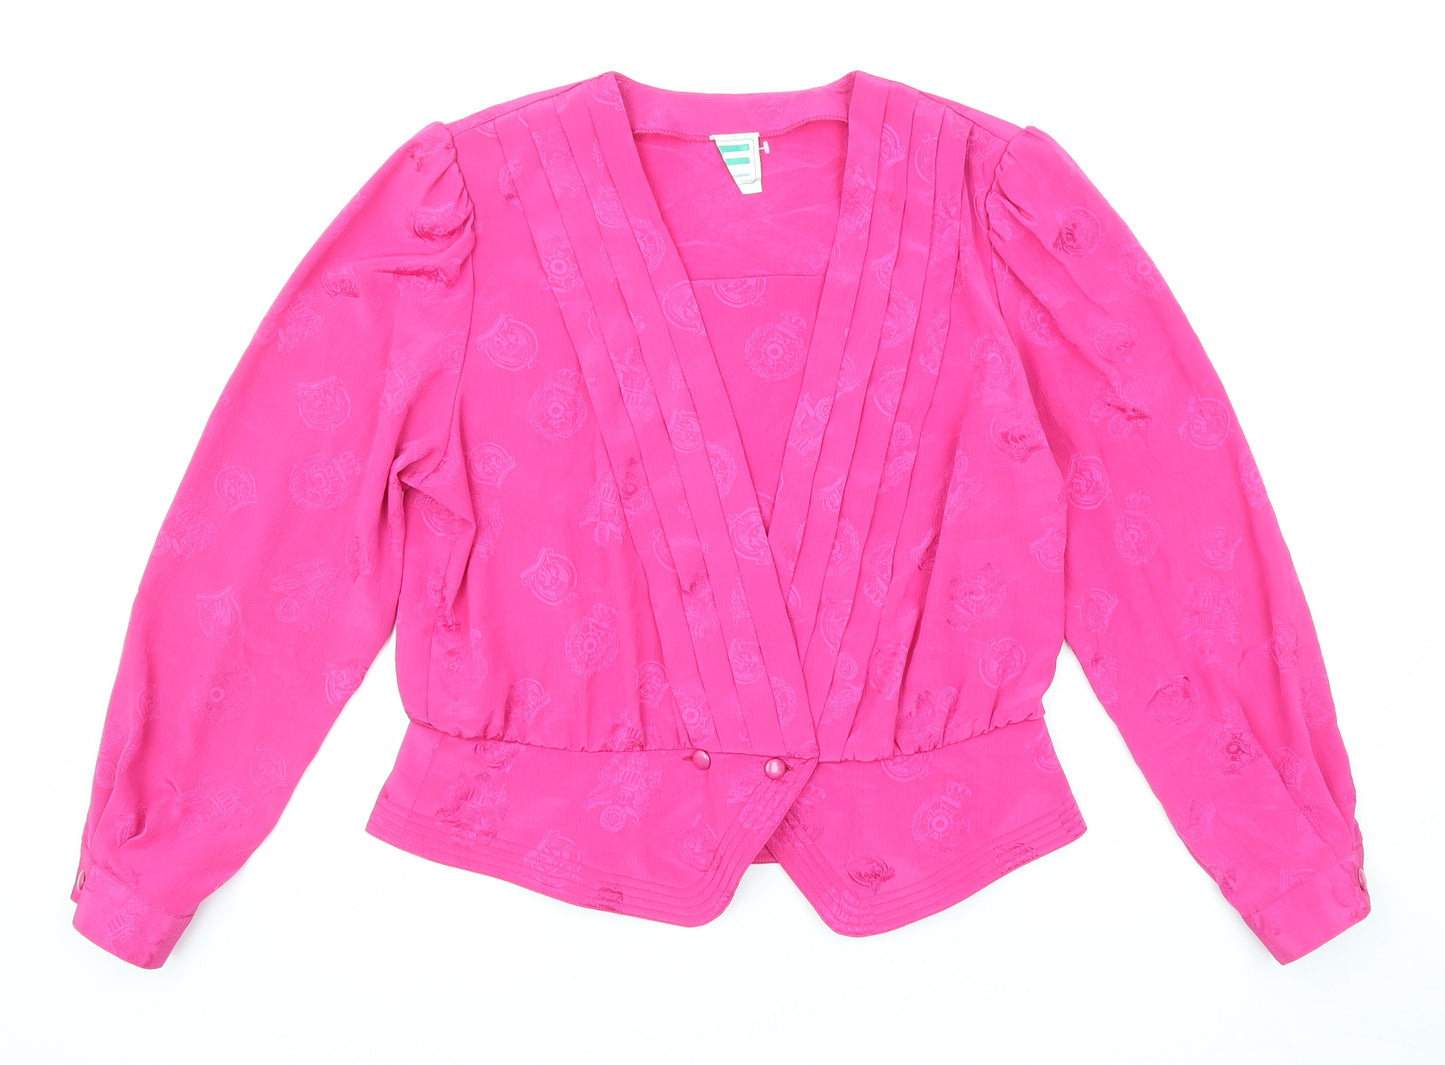 Frankenwelder Womens Pink Geometric Polyester Basic Blouse Size 14 V-Neck